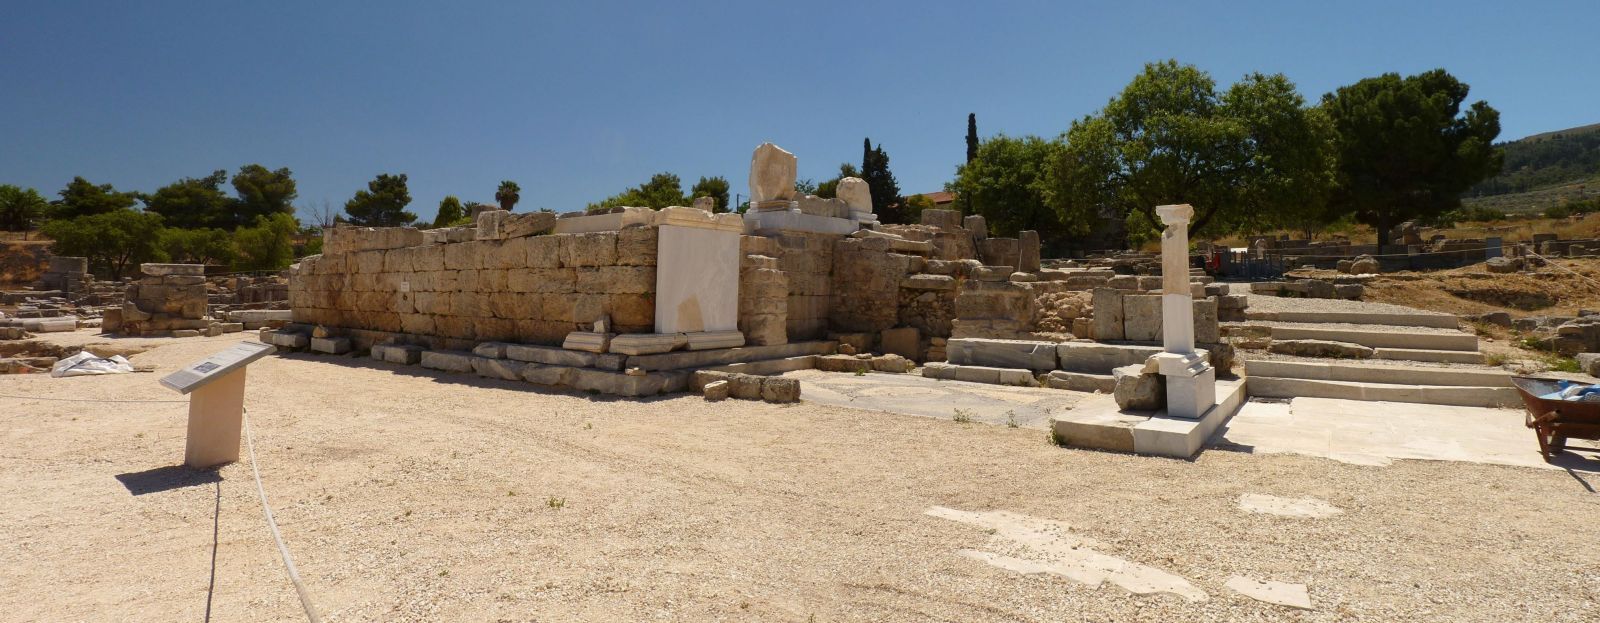 Bema (Judgment) Seat at Ancient Corinth